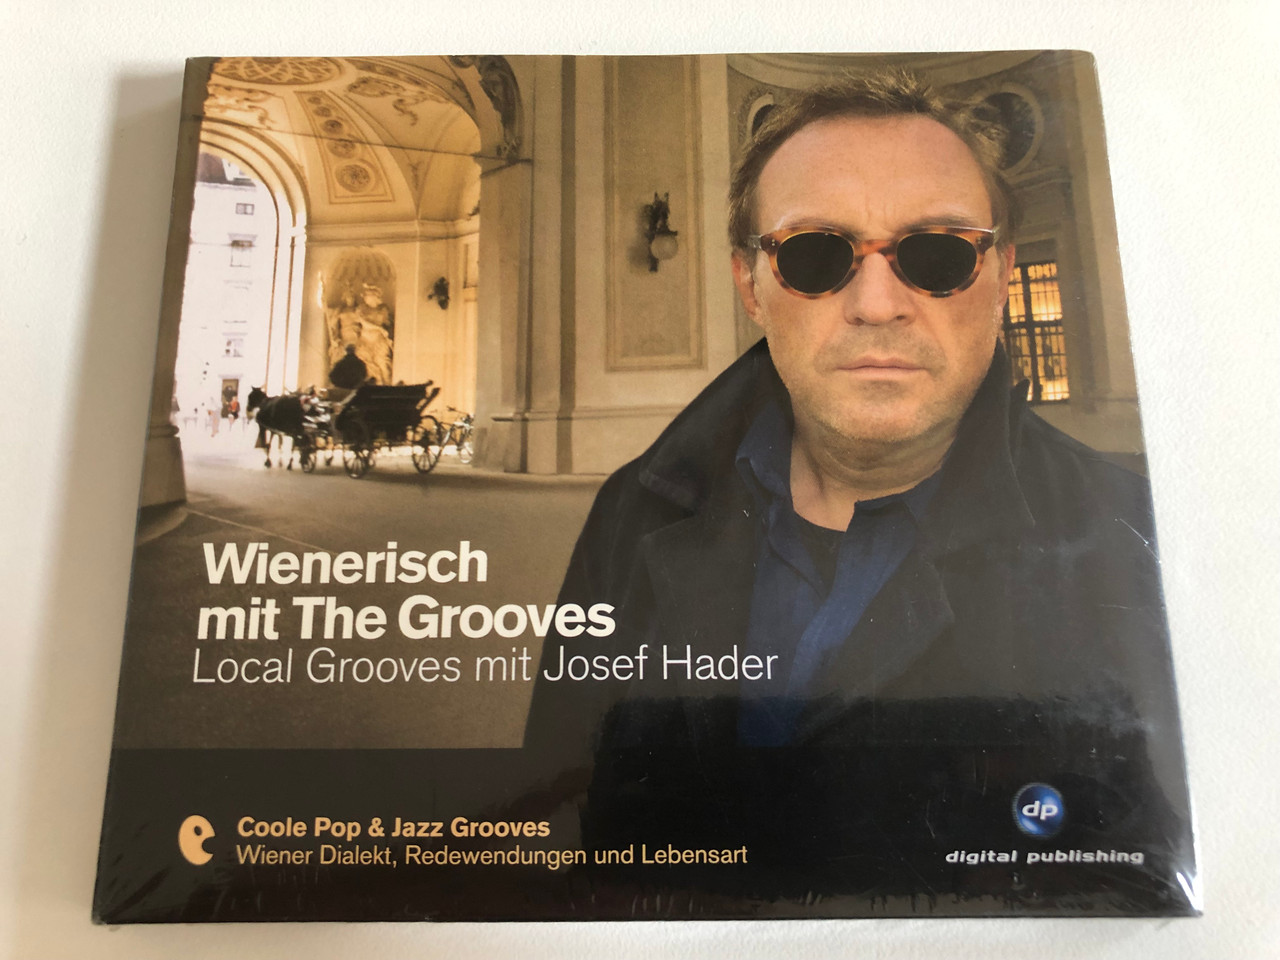 https://cdn10.bigcommerce.com/s-62bdpkt7pb/products/31429/images/184895/Wienerisch_Mit_The_Grooves_-_Local_Grooves_mit_Josef_Hader_Coole_Pop_Jazz_Grooves_Wiener_Dialekt_Radewendungen_und_Lebensart_Digital_Publishing_Audio_CD_2008_20_1__52567.1626424940.1280.1280.JPG?c=2&_gl=1*iis4ck*_ga*OTE2MzI1NzU5LjE2MjY0NjA3Nzg.*_ga_WS2VZYPC6G*MTYyNjQ2MDc3Ny4xLjEuMTYyNjQ2NTkwNC42MA..